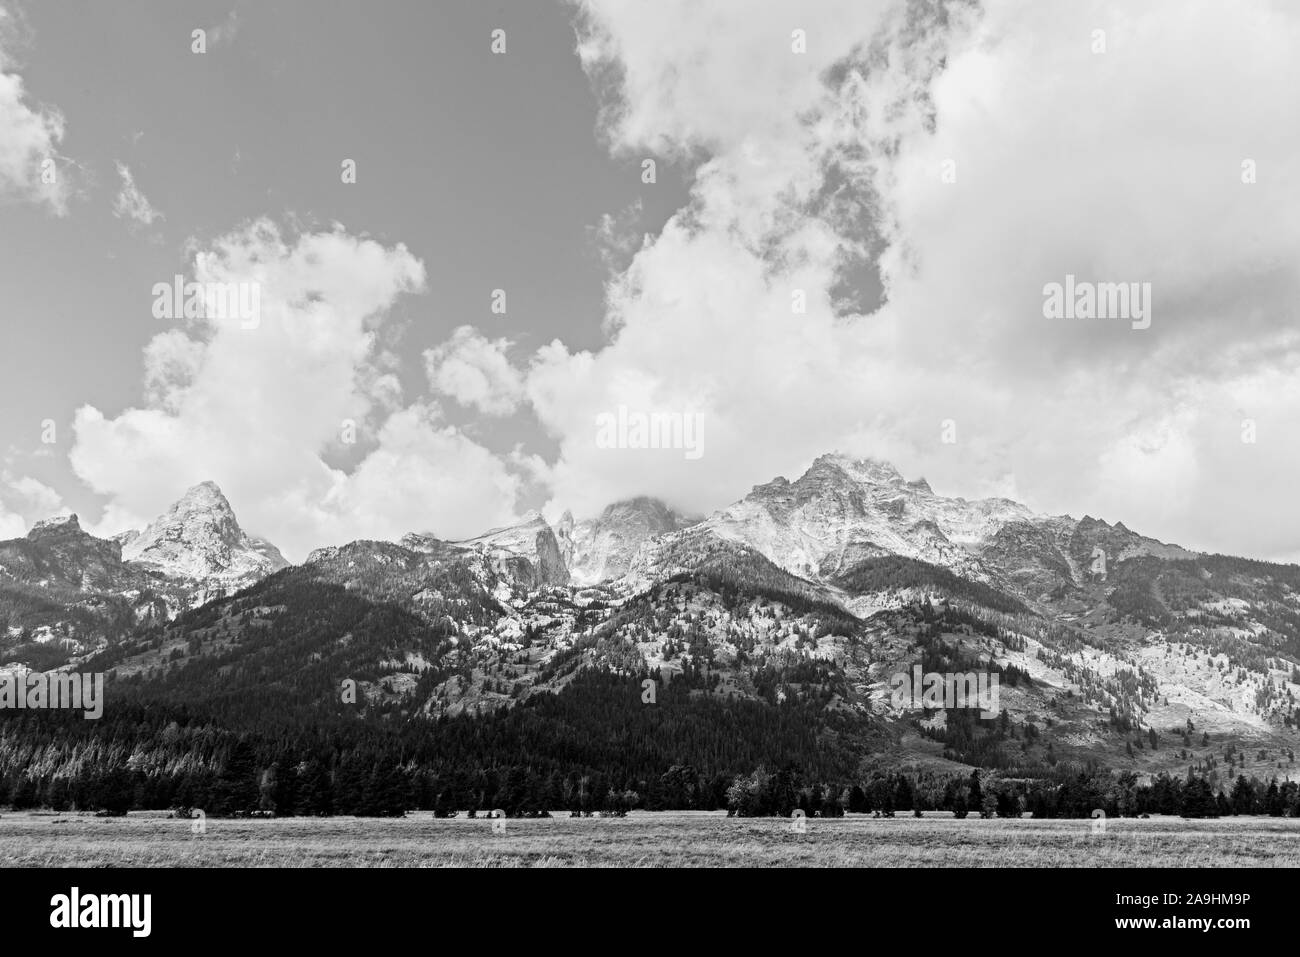 Schwarz-weiß, Seite der hohen Rocky Mountains mit weißen, flauschigen Wolken darüber. Stockfoto